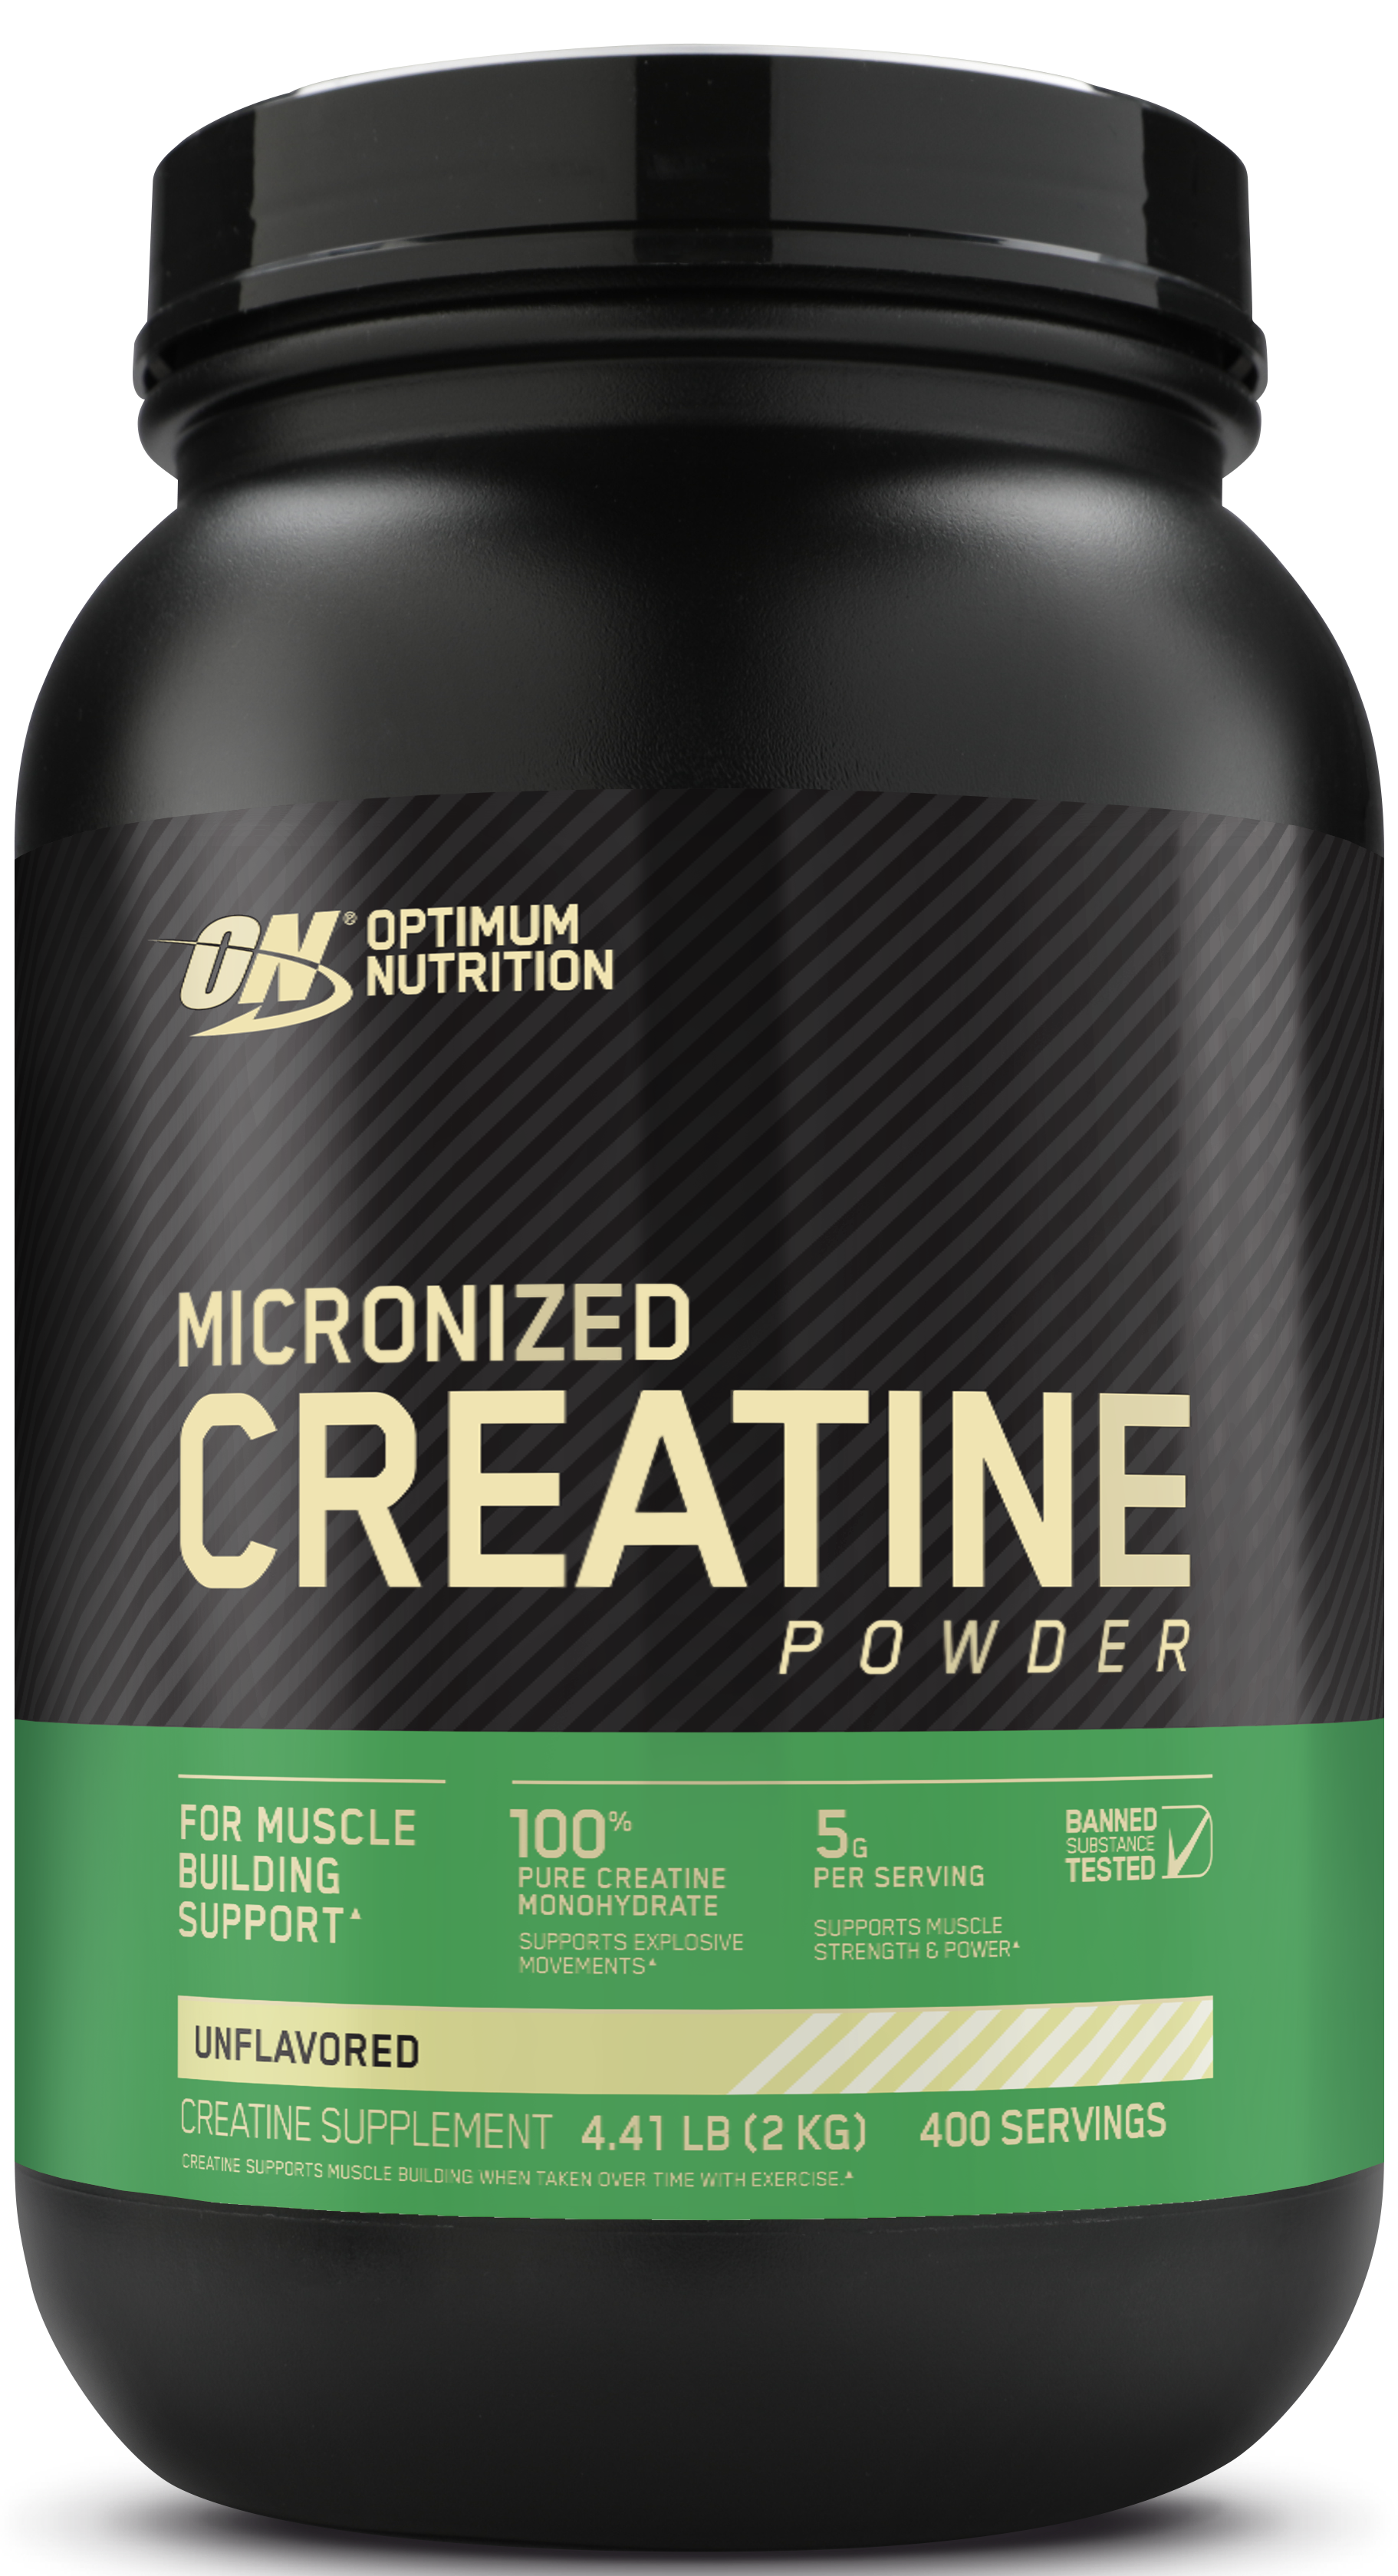 Optimum nutrition powder. Optimum Nutrition Micronized Creatine Powder. Optimum Nutrition Creatine Powder. Optimum Nutrition Micronized Creatine Powder (150g). Creatine Monohydrate Optimum Nutrition.